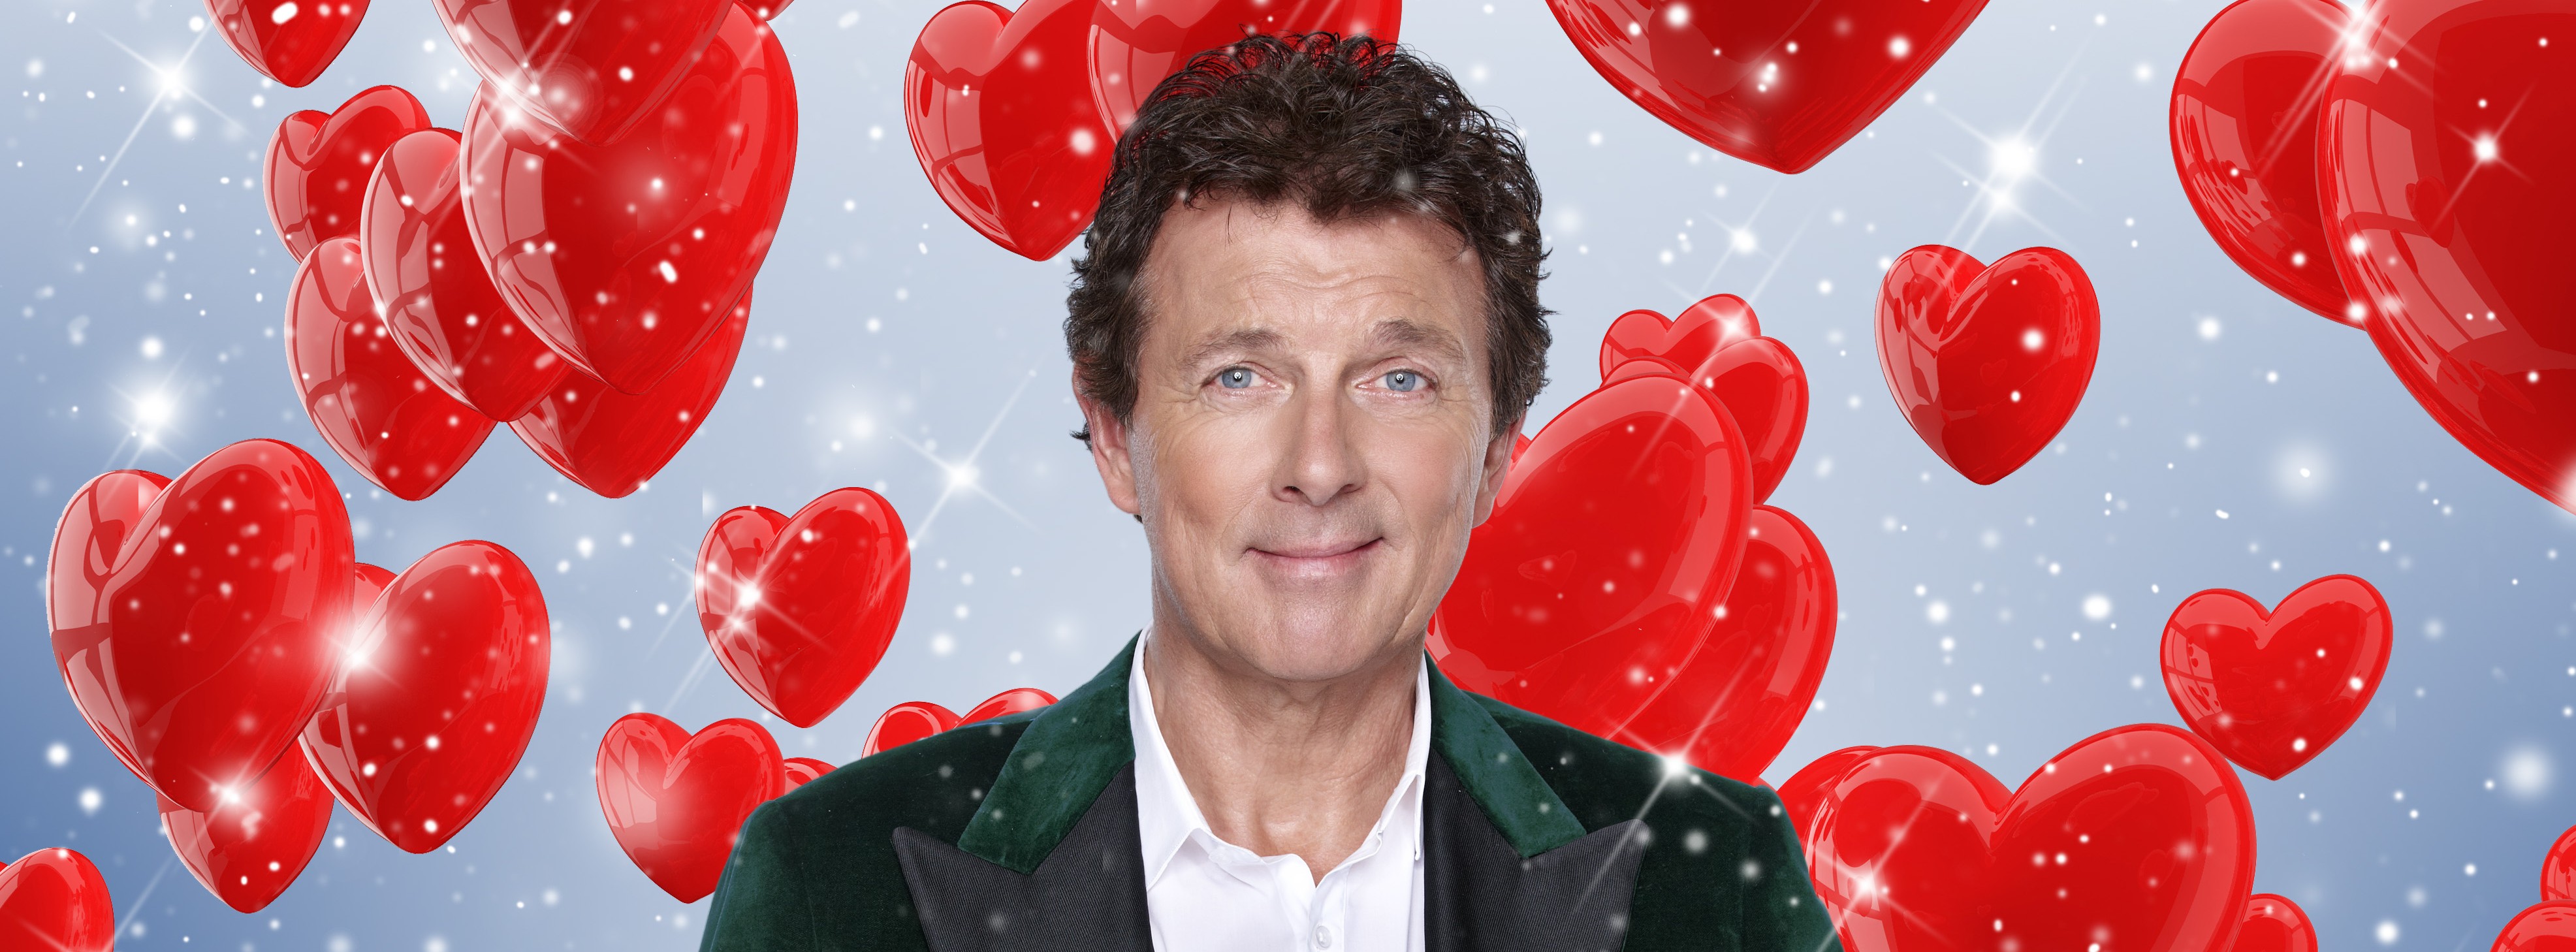 All you need is love kerstspecial natuurlijk op RTL4 NWTV